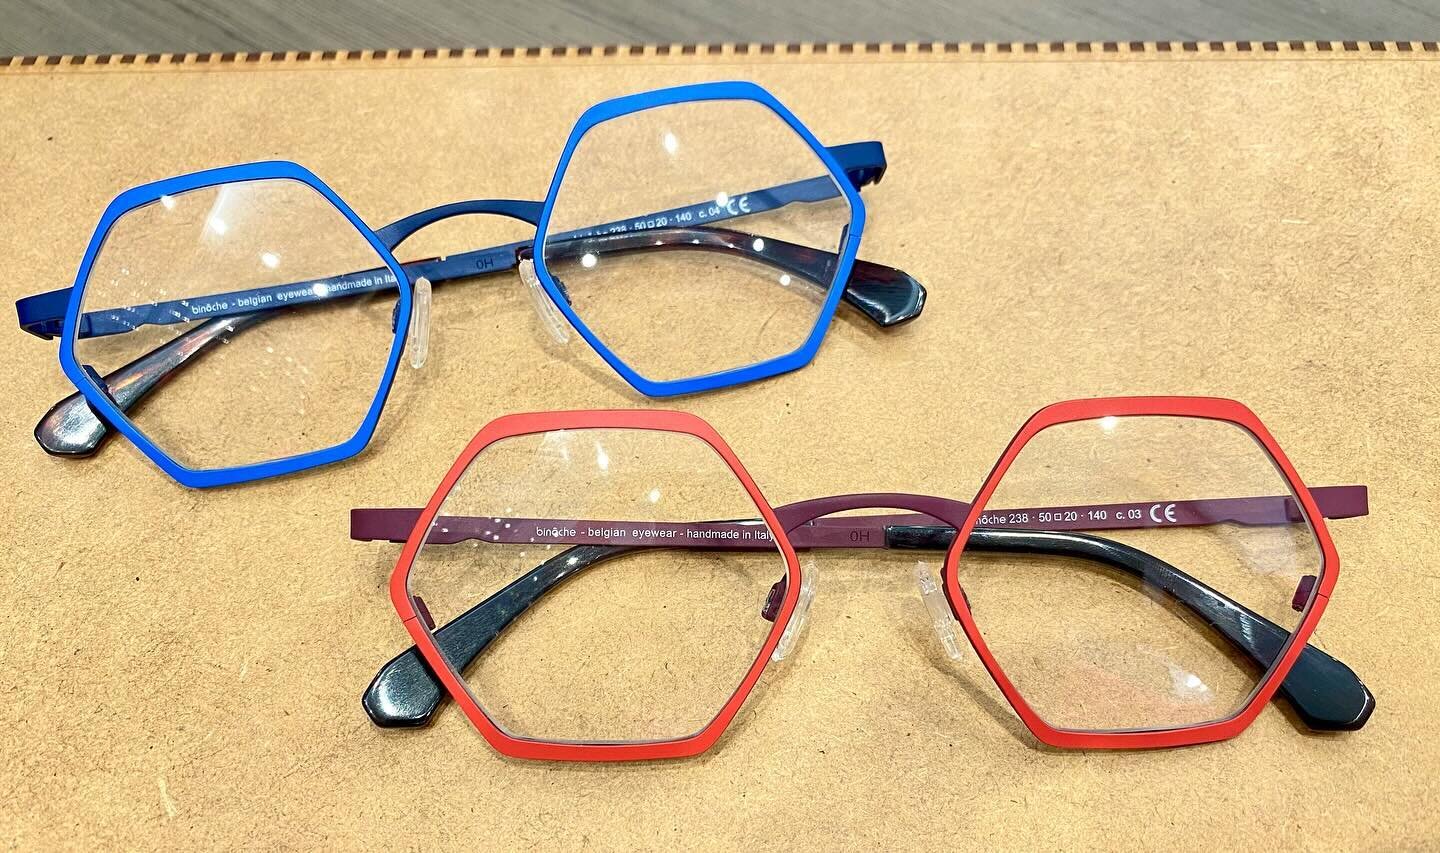 💙❤️ Blauw of rood?
Zelfde model van Bin&ocirc;che, maar elk met een andere uitstraling 👓🇧🇪

#optiekhuys #kortenberg #optiek #opticien #optician #lunetier #lunettes #binoche #binocheeyewear #eyewear #belgischmerk #belgianbrand #belgianeyewear